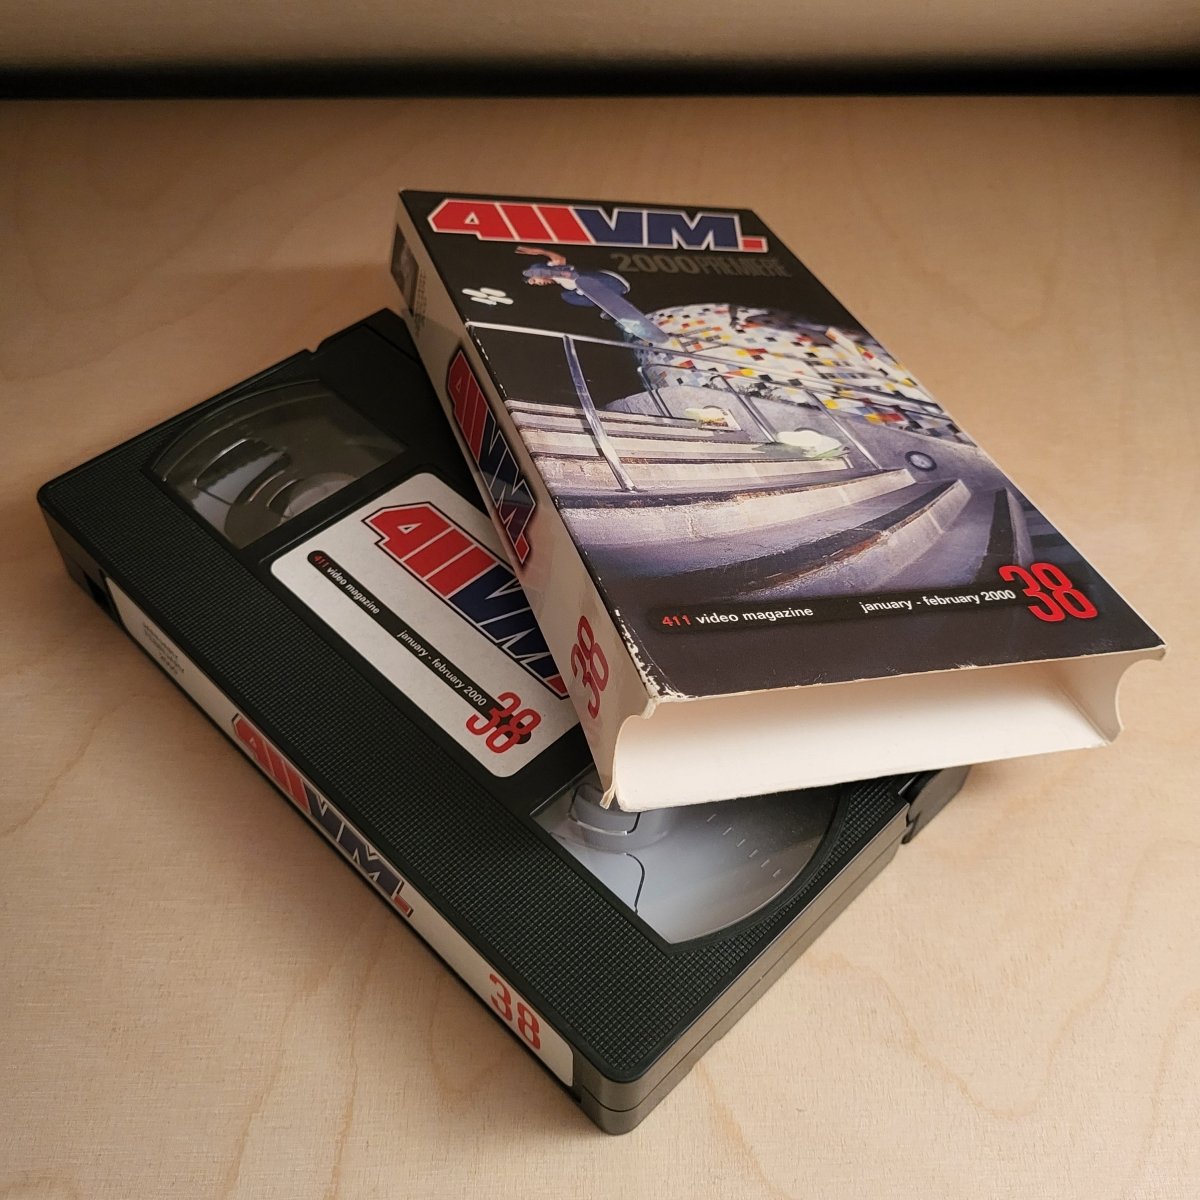 VHS Skatevideo 411VM 38 - 2000 - VHS - Rollbrett Mission